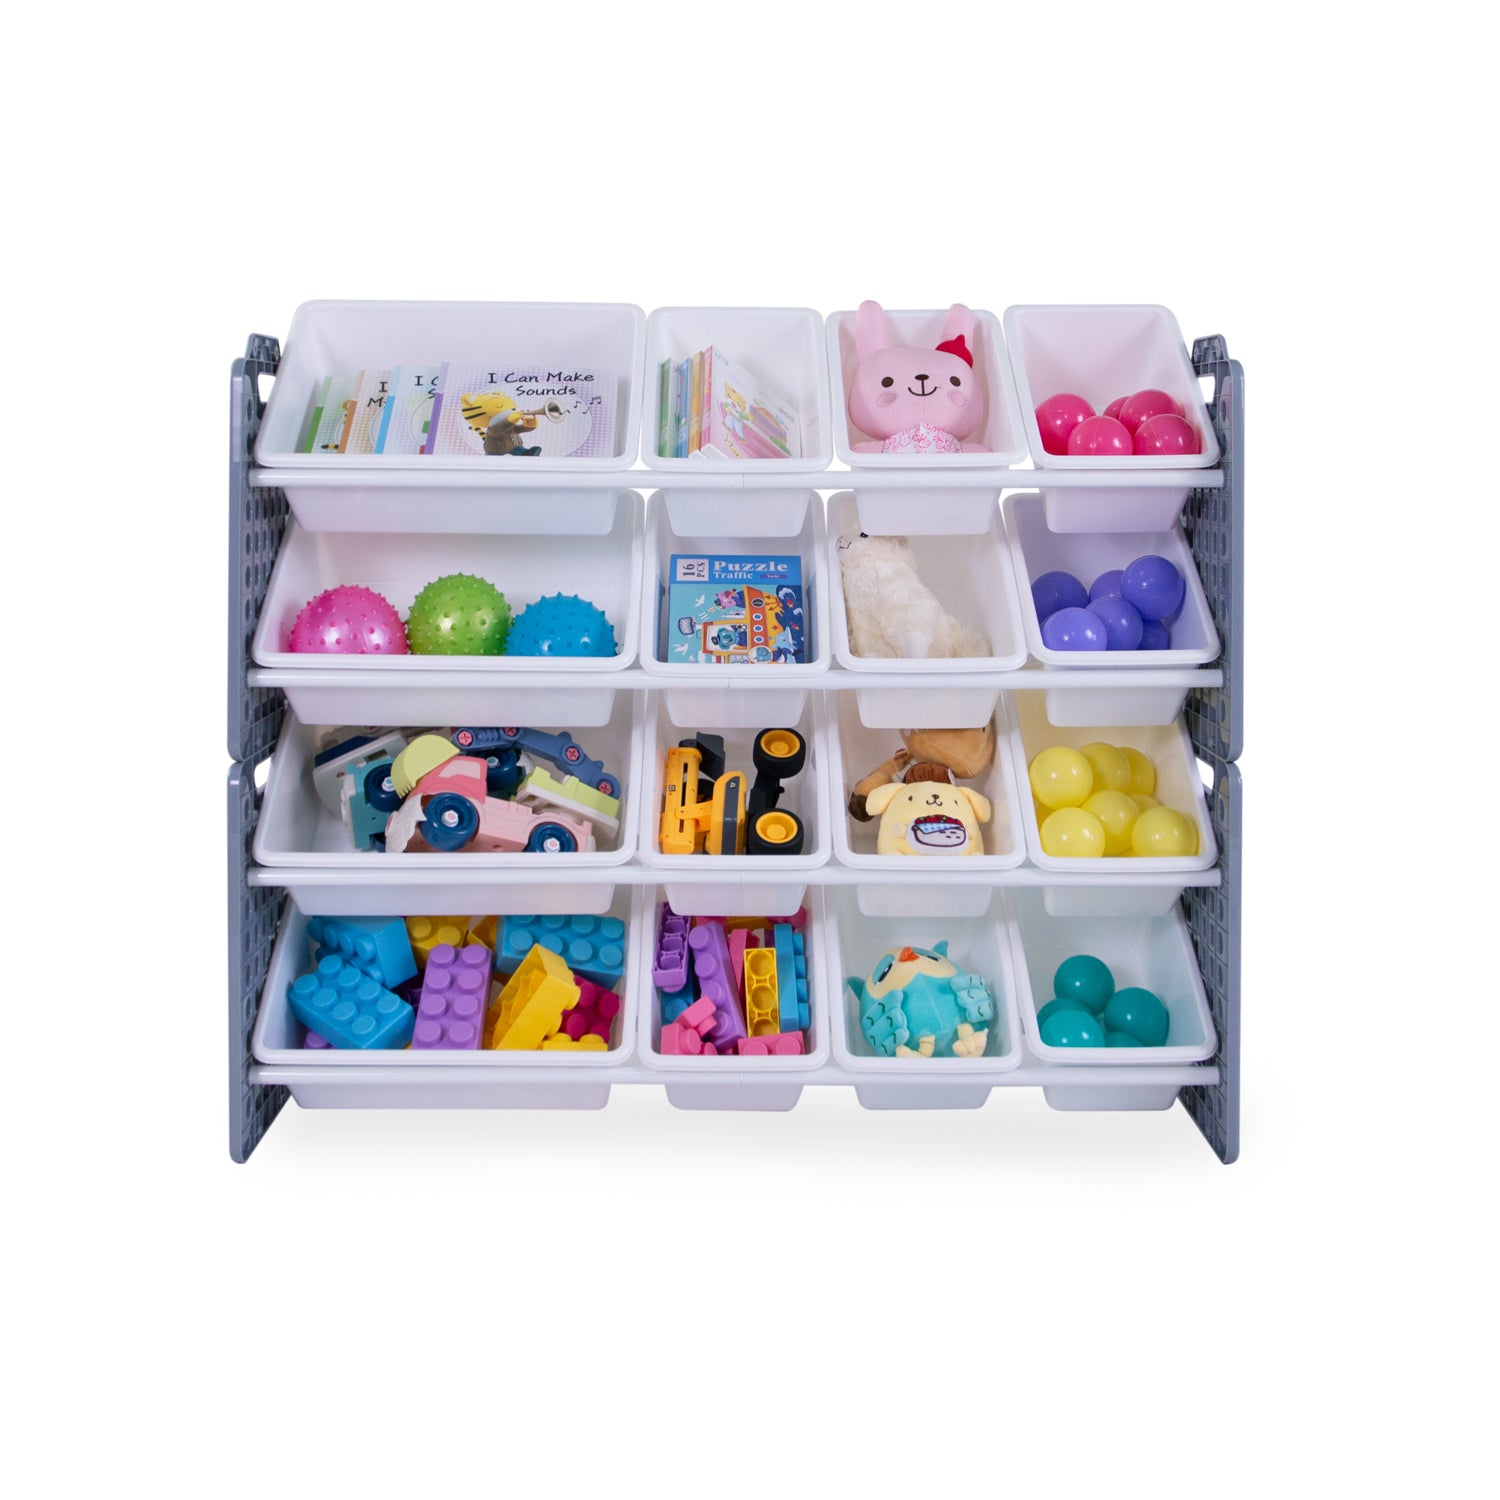 UNiPLAY 16 Bins Toy Storage Organizer - Gray (UB45712)